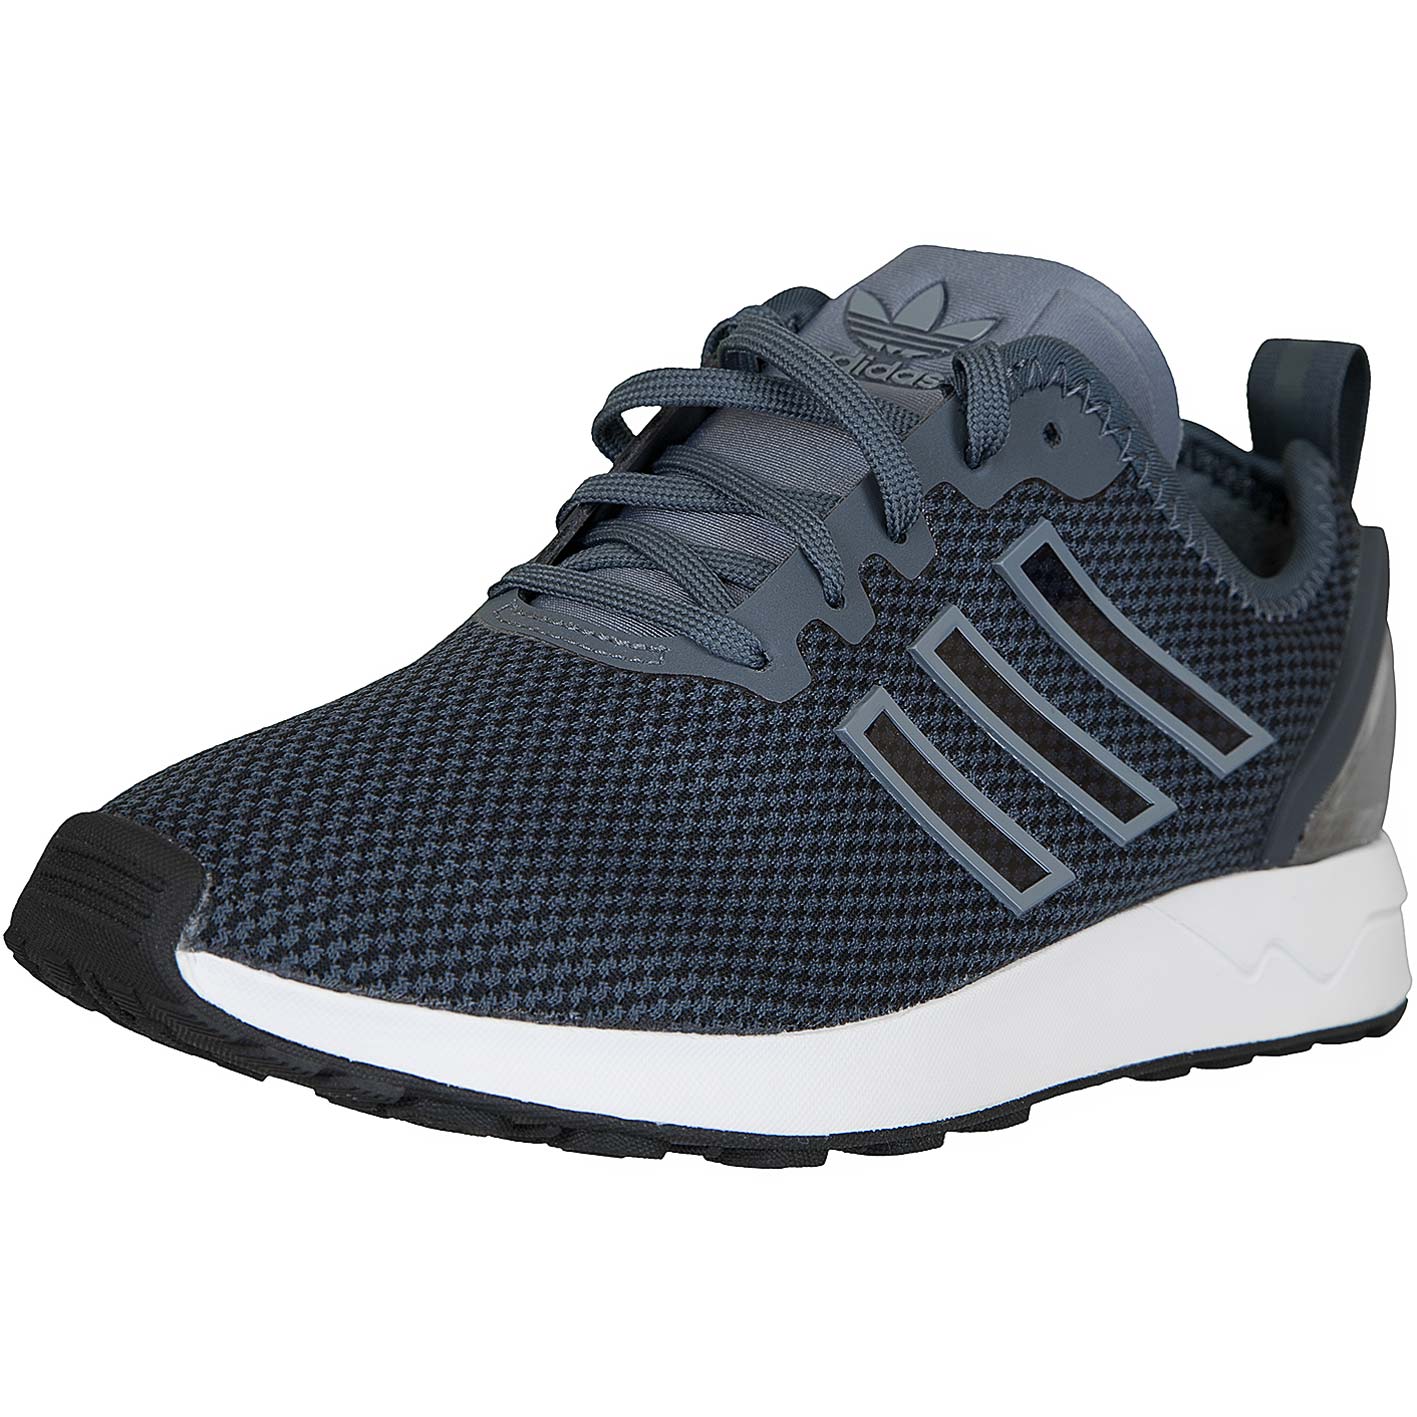 ☆ Adidas Originals Sneaker ZX Flux ADV grau/schwarz - hier bestellen!